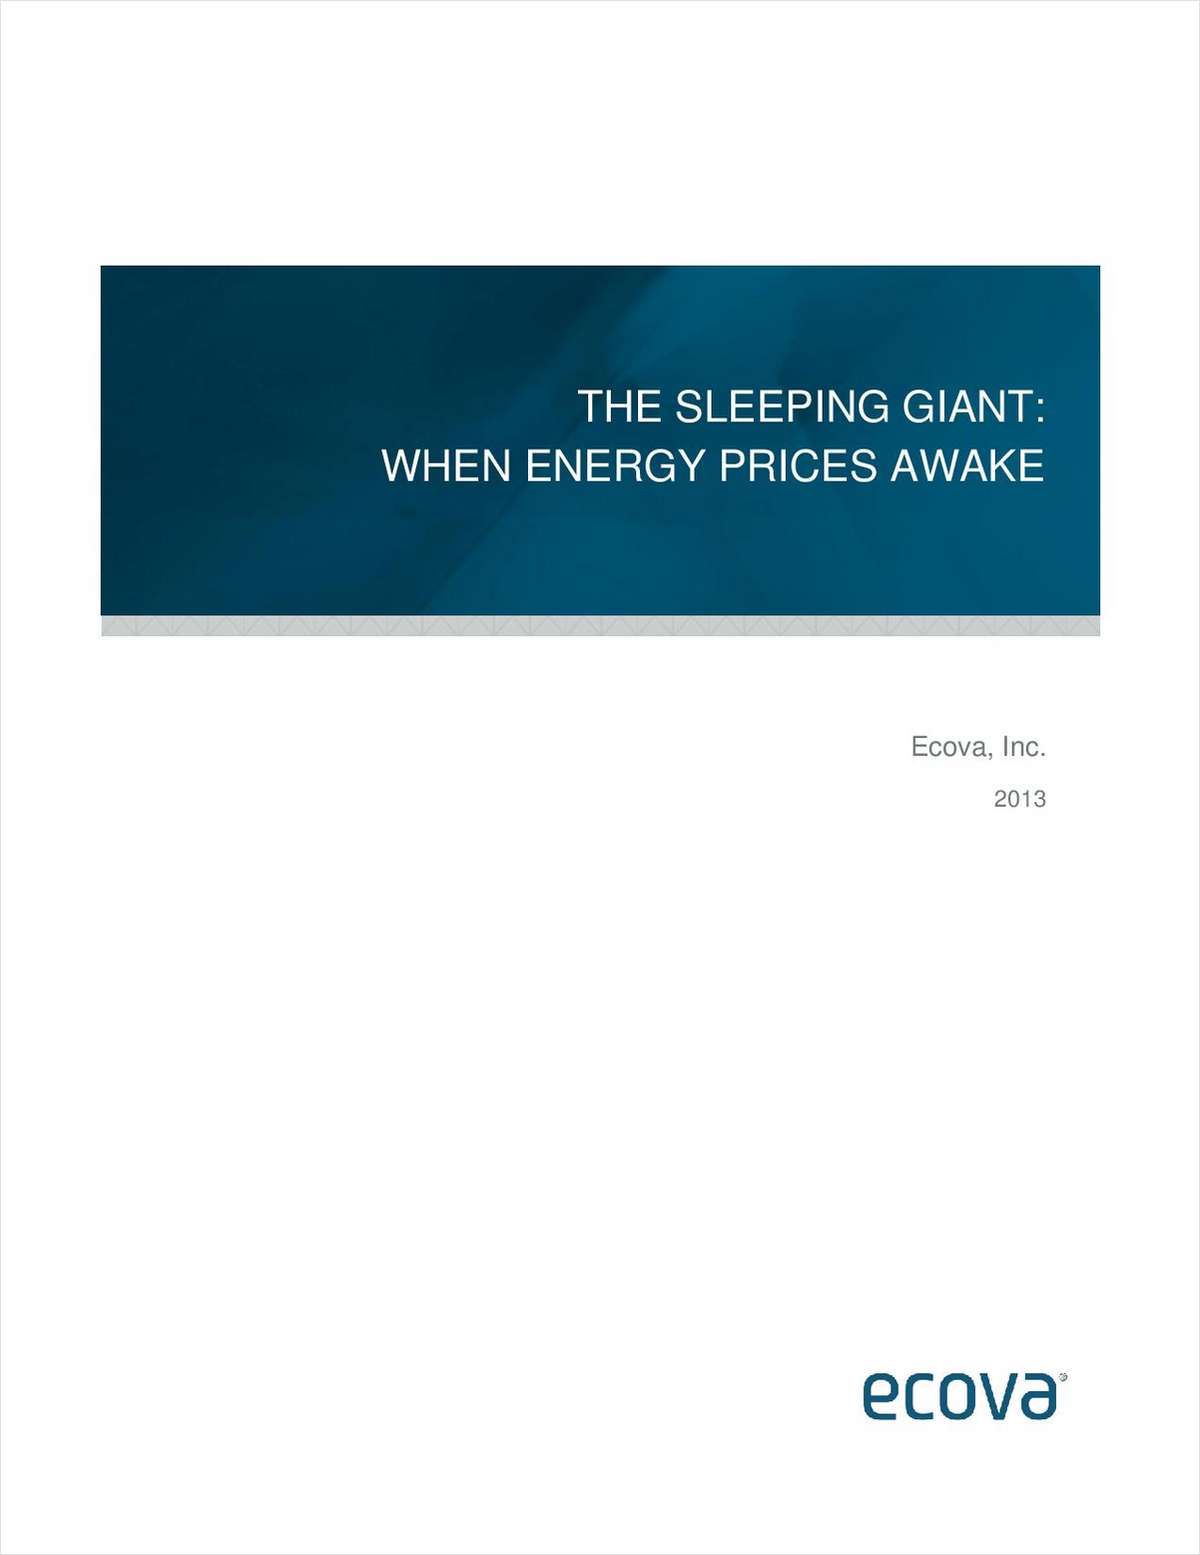 The Sleeping Giant – When Energy Prices Awake